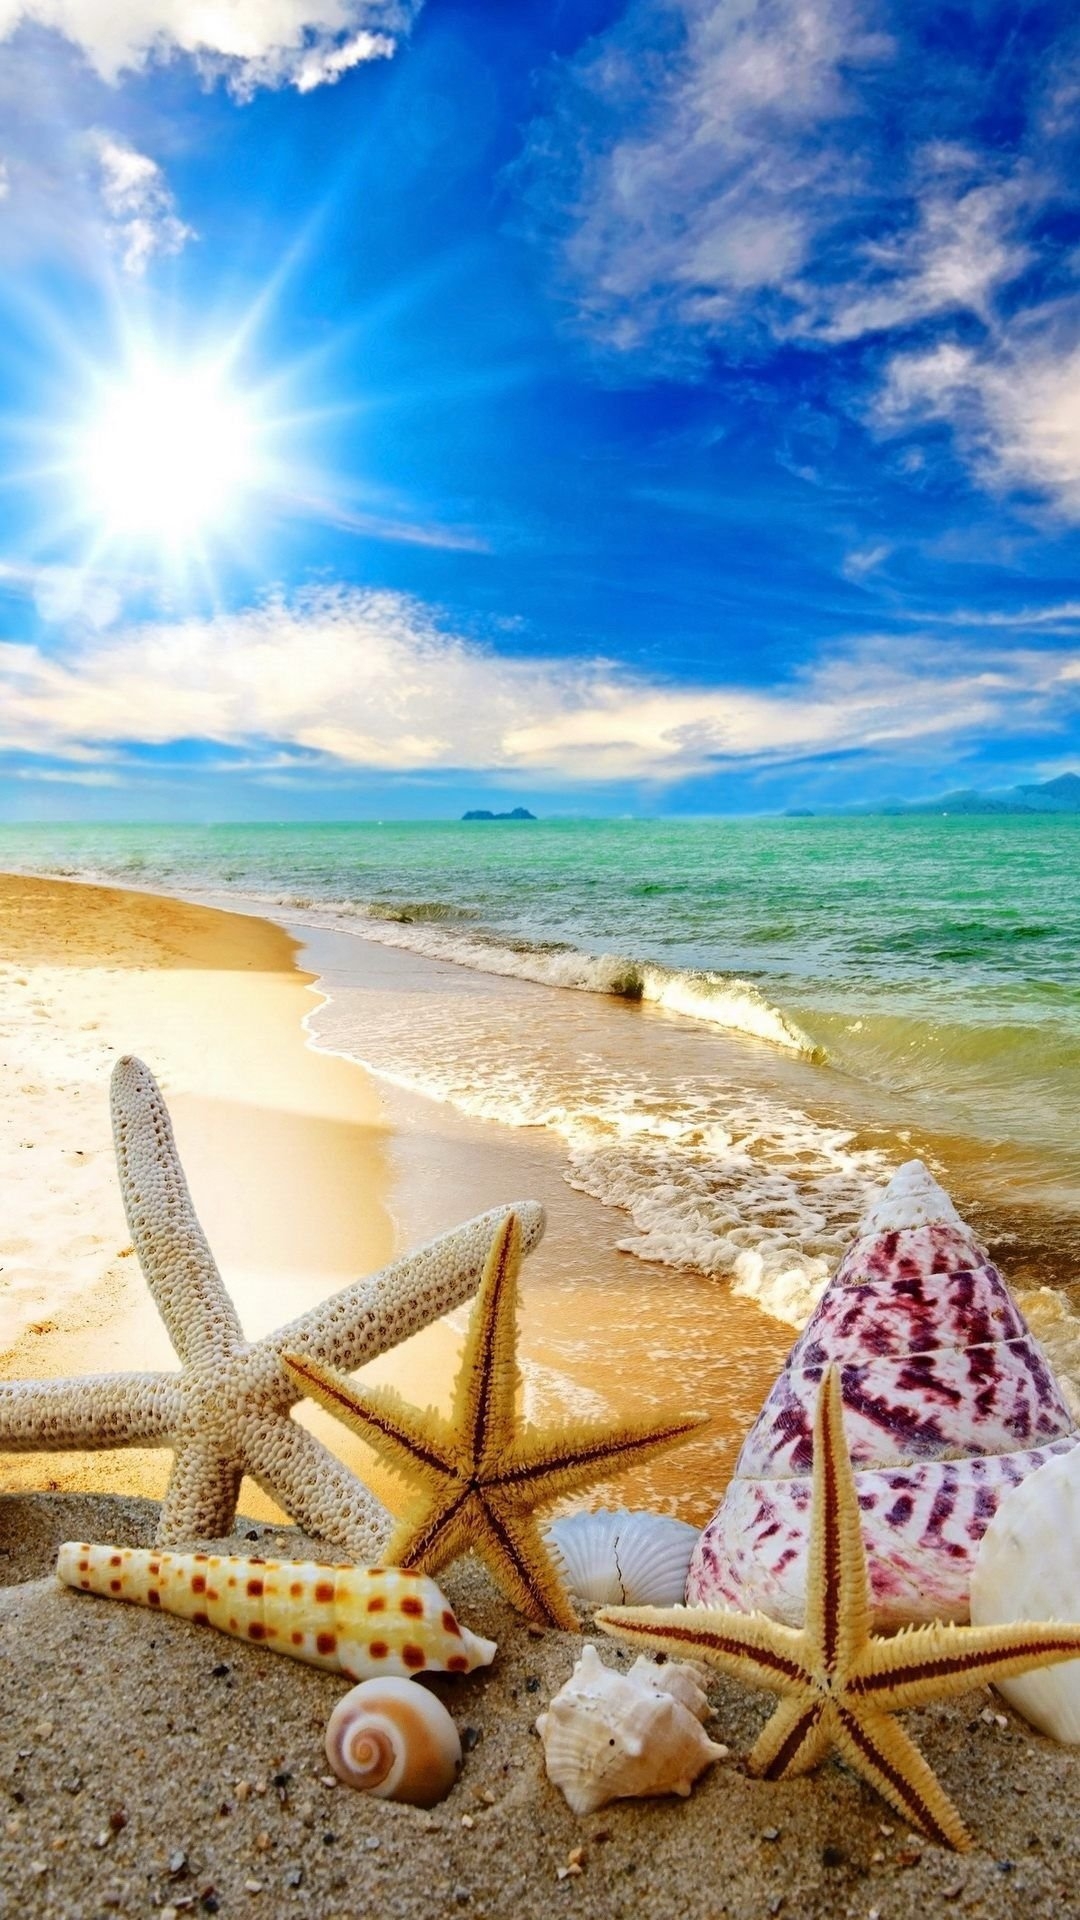 Картинки красивые лето море солнце пляж (69 фото) » Картинки и статусы про окружающий мир вокруг